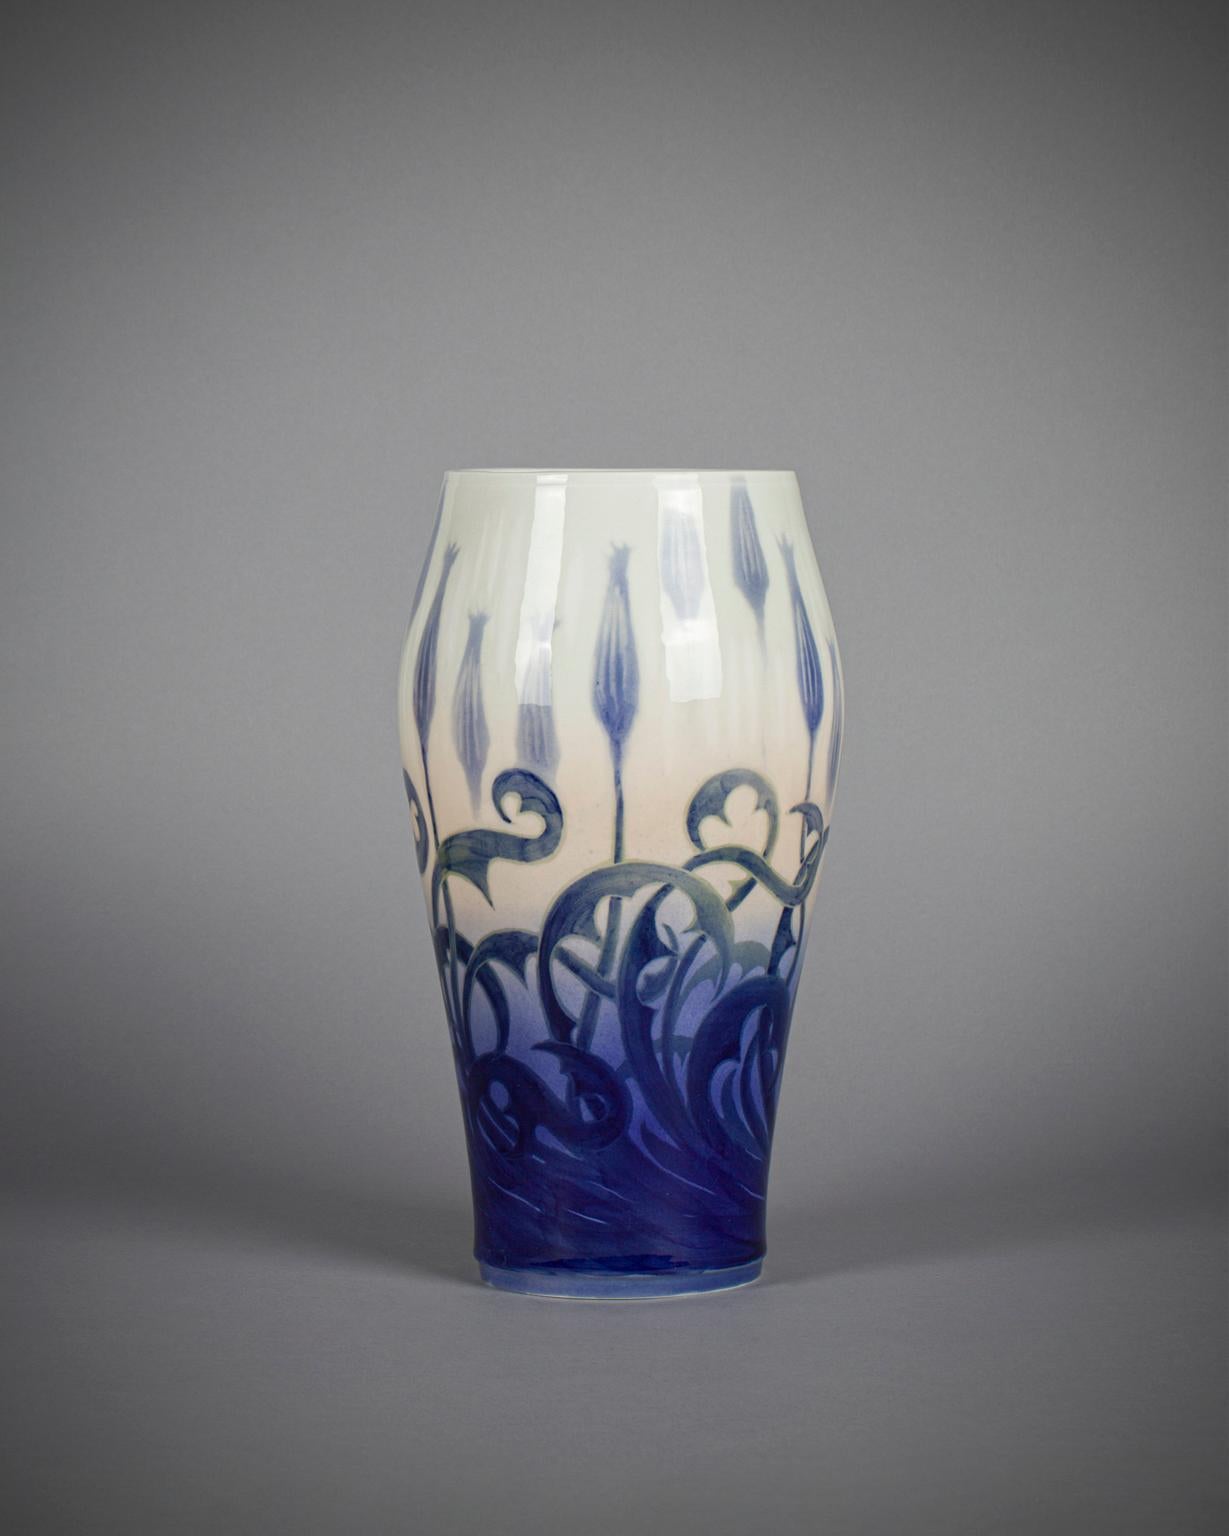 Grand vase en porcelaine signé Gerhard Heilmann (1859-1946) à décor floral exotique. Copenhague, Danemark, marques d'usine peintes et nom de l'artiste en bleu.